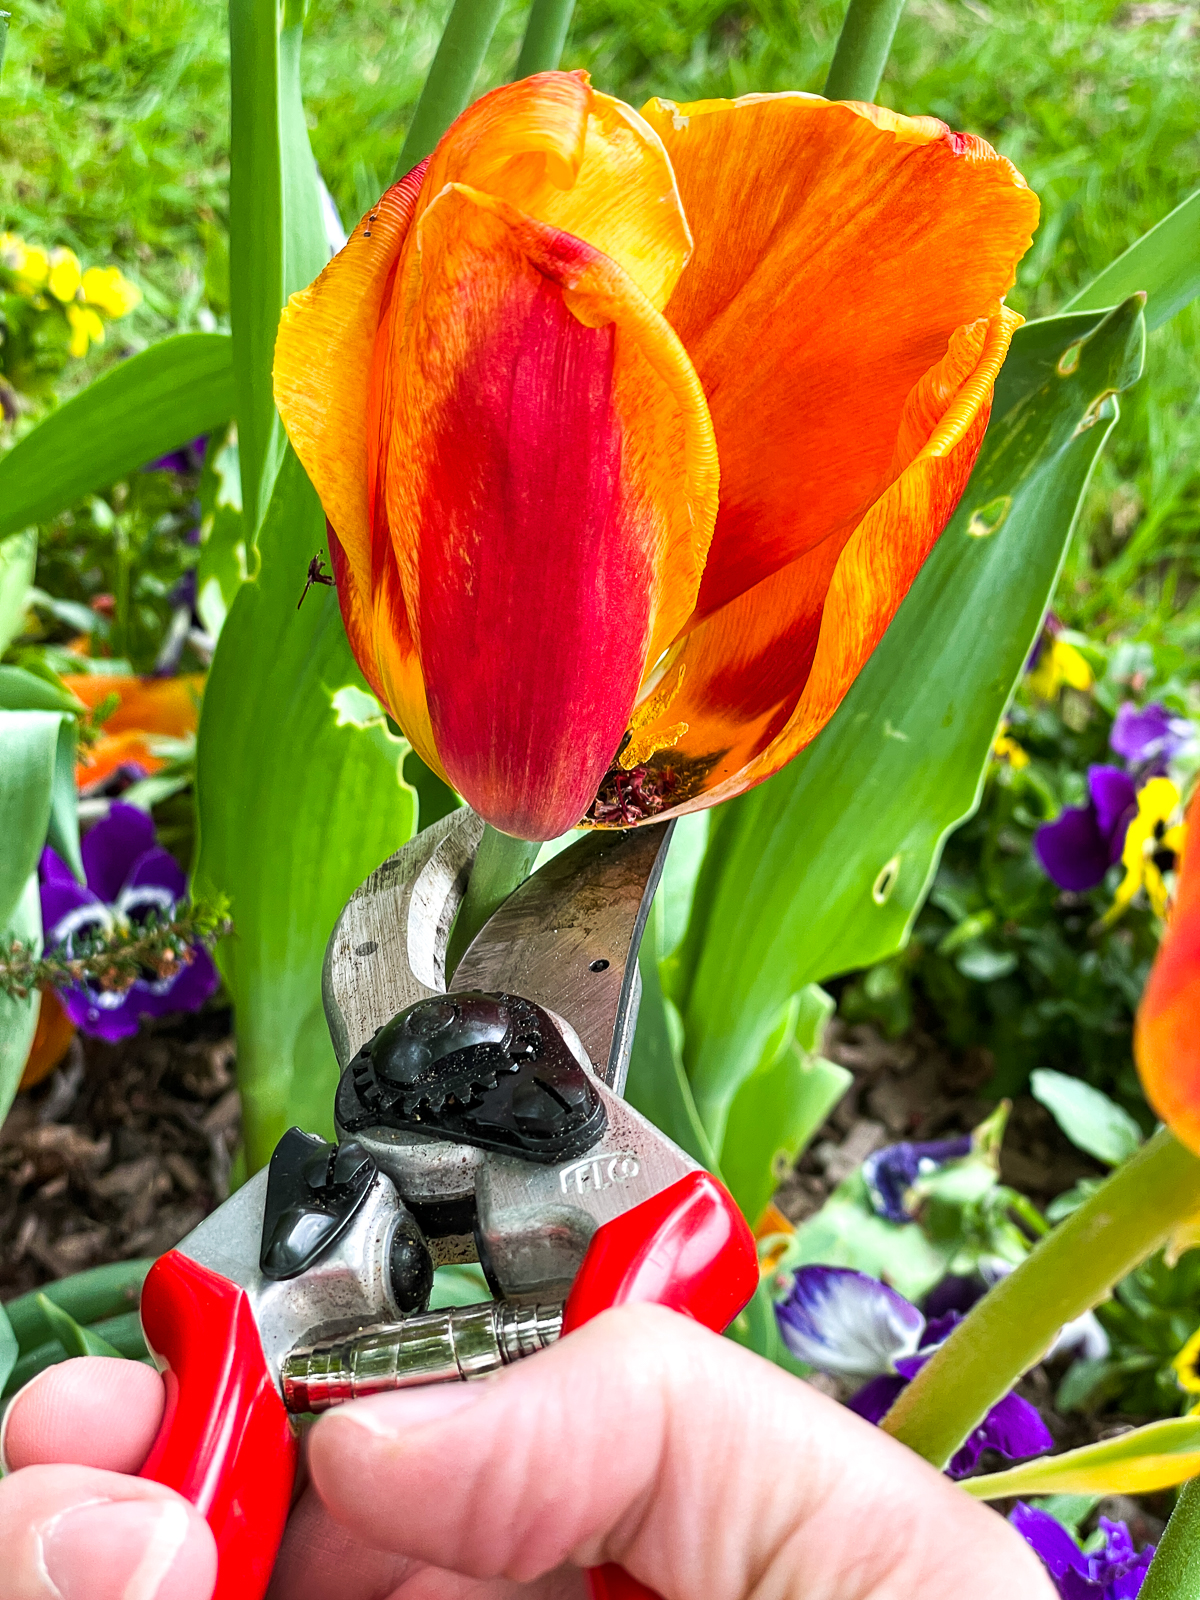 deadheading spent tulip blooms